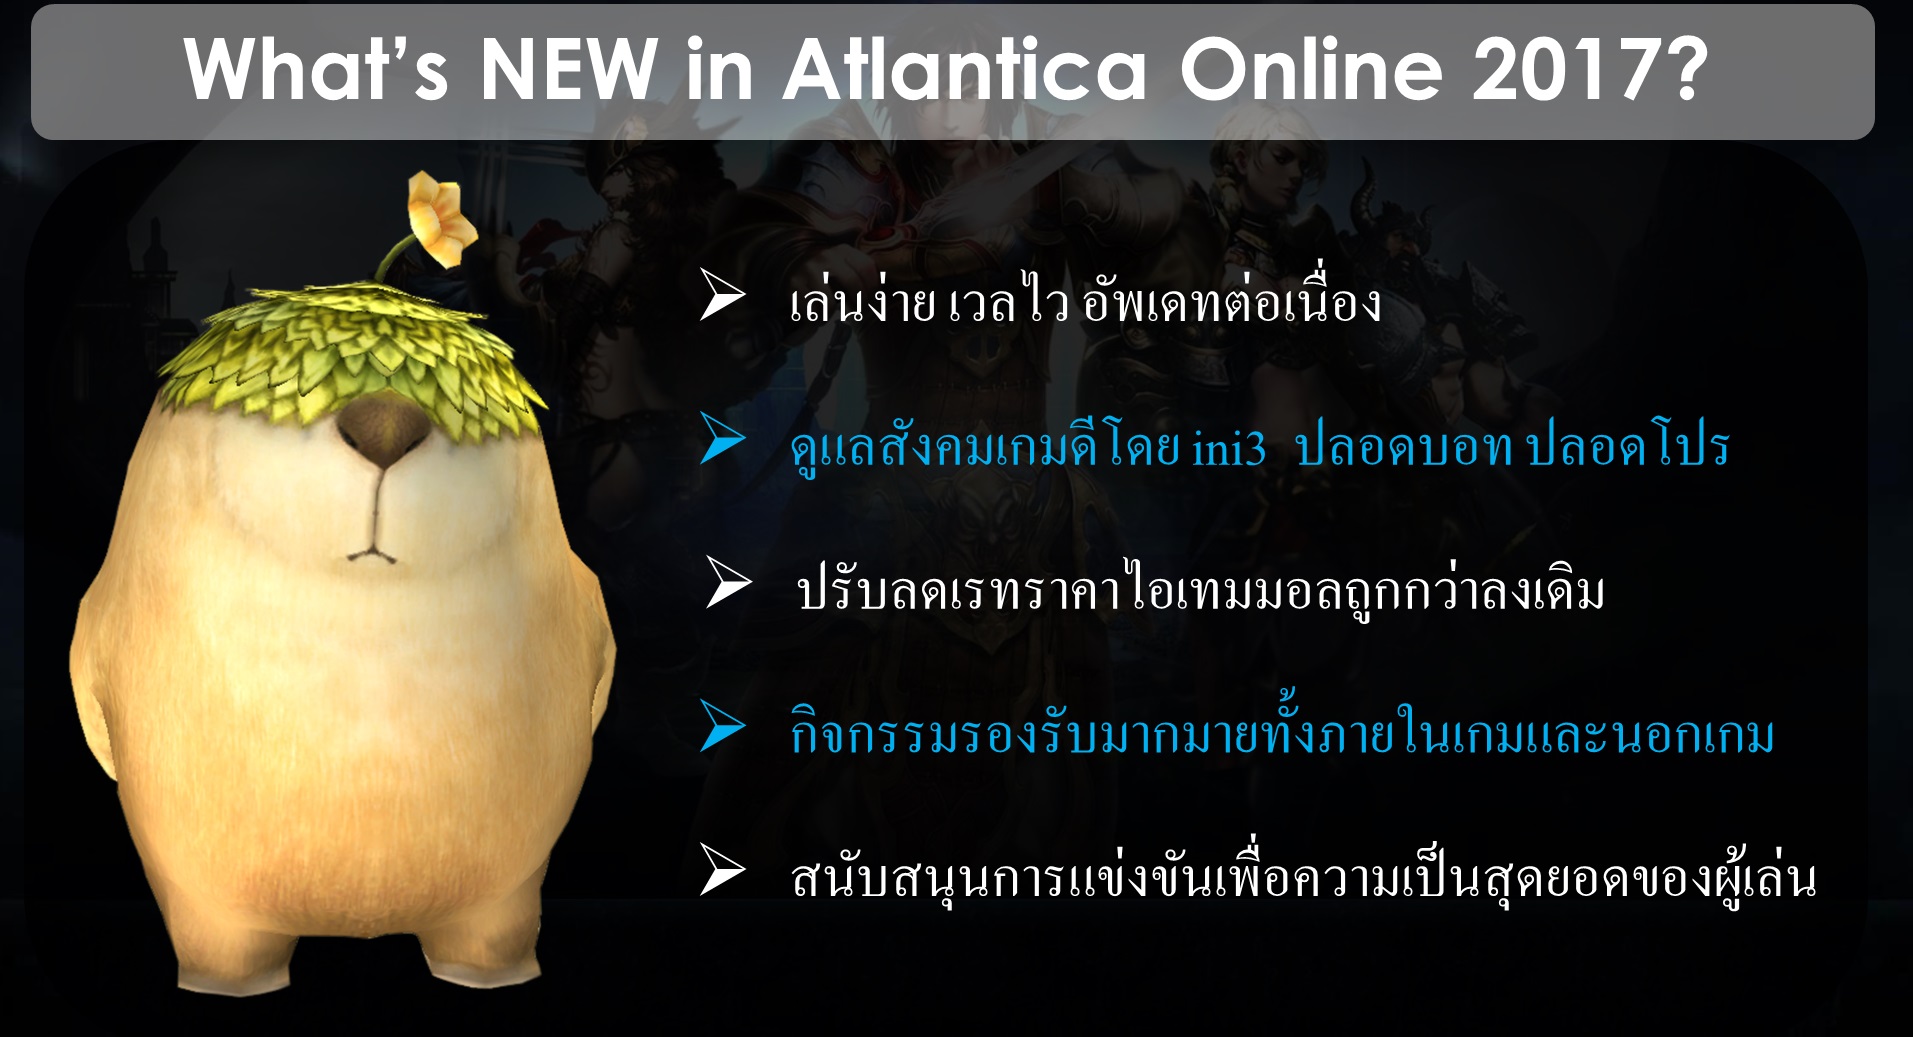 Atlantica online